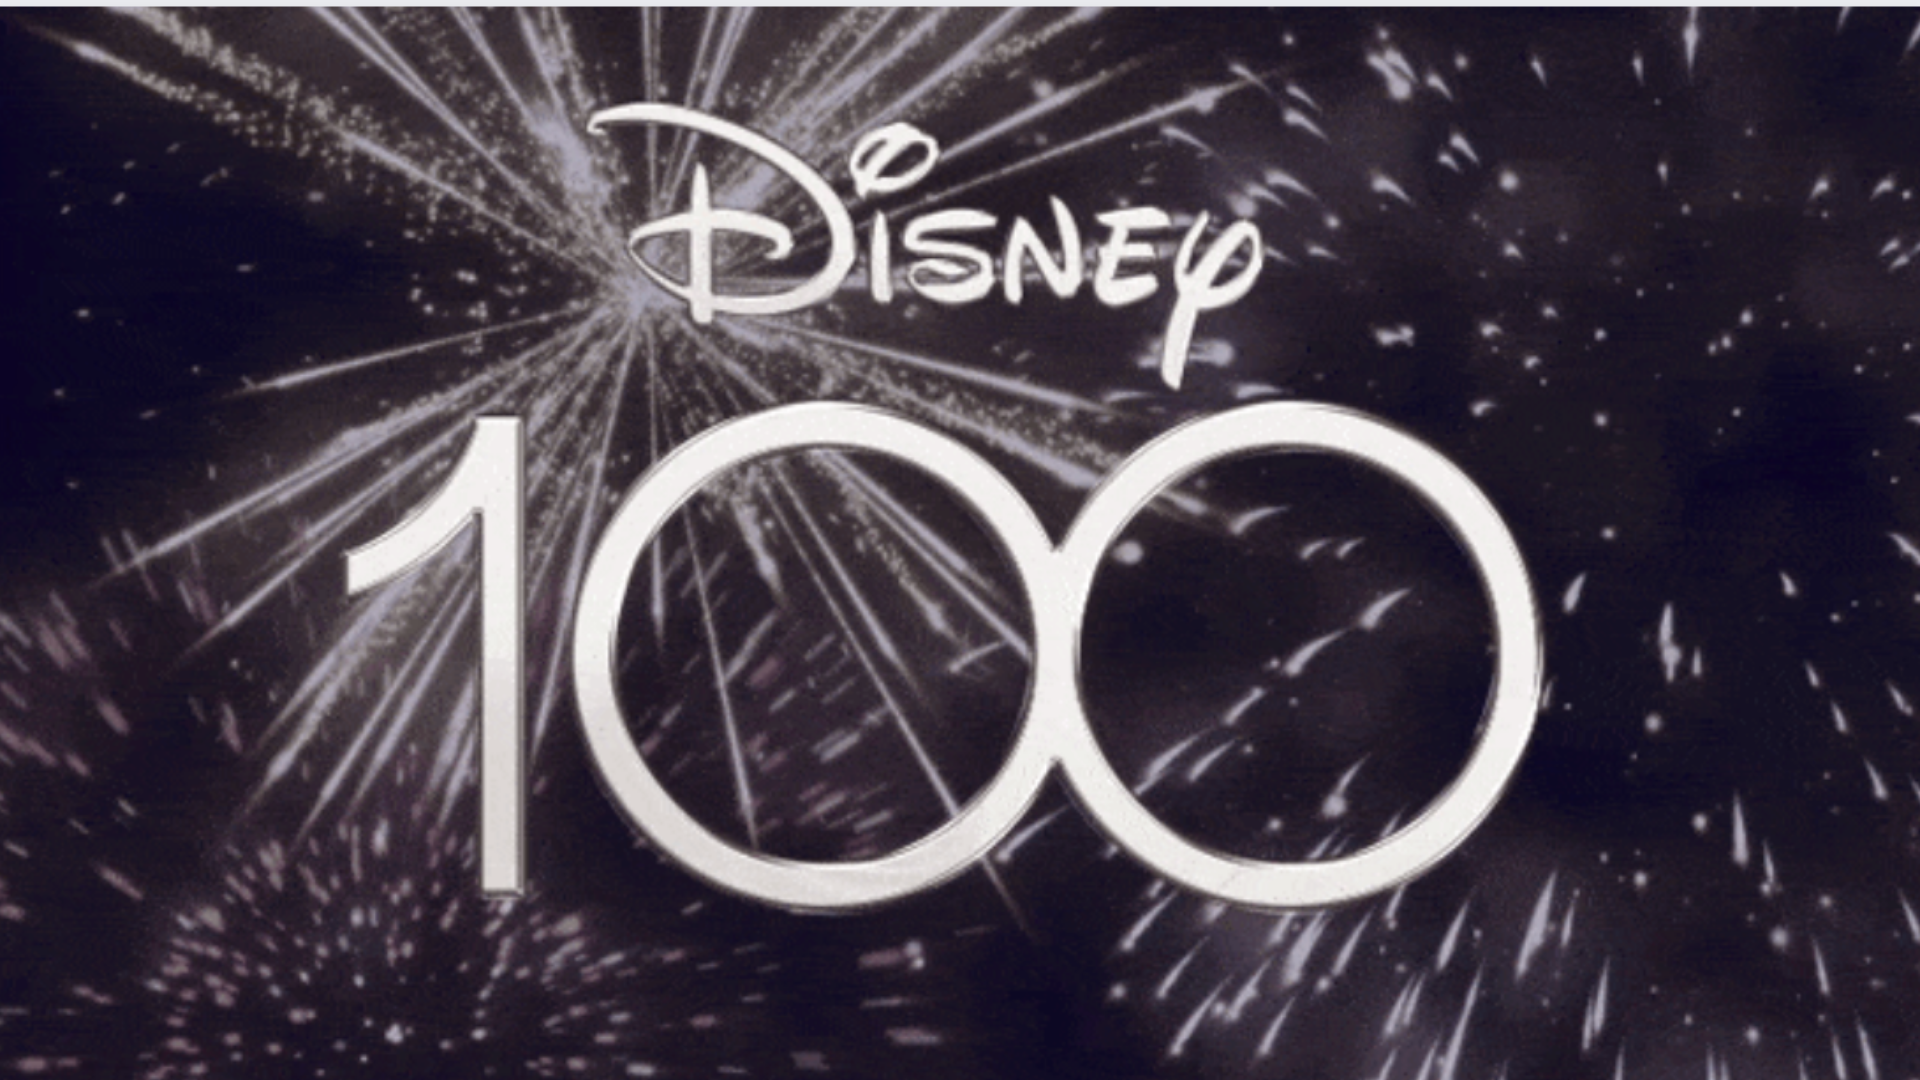 LEGO dévoile un set magique pour célébrer les 100 ans de Disney